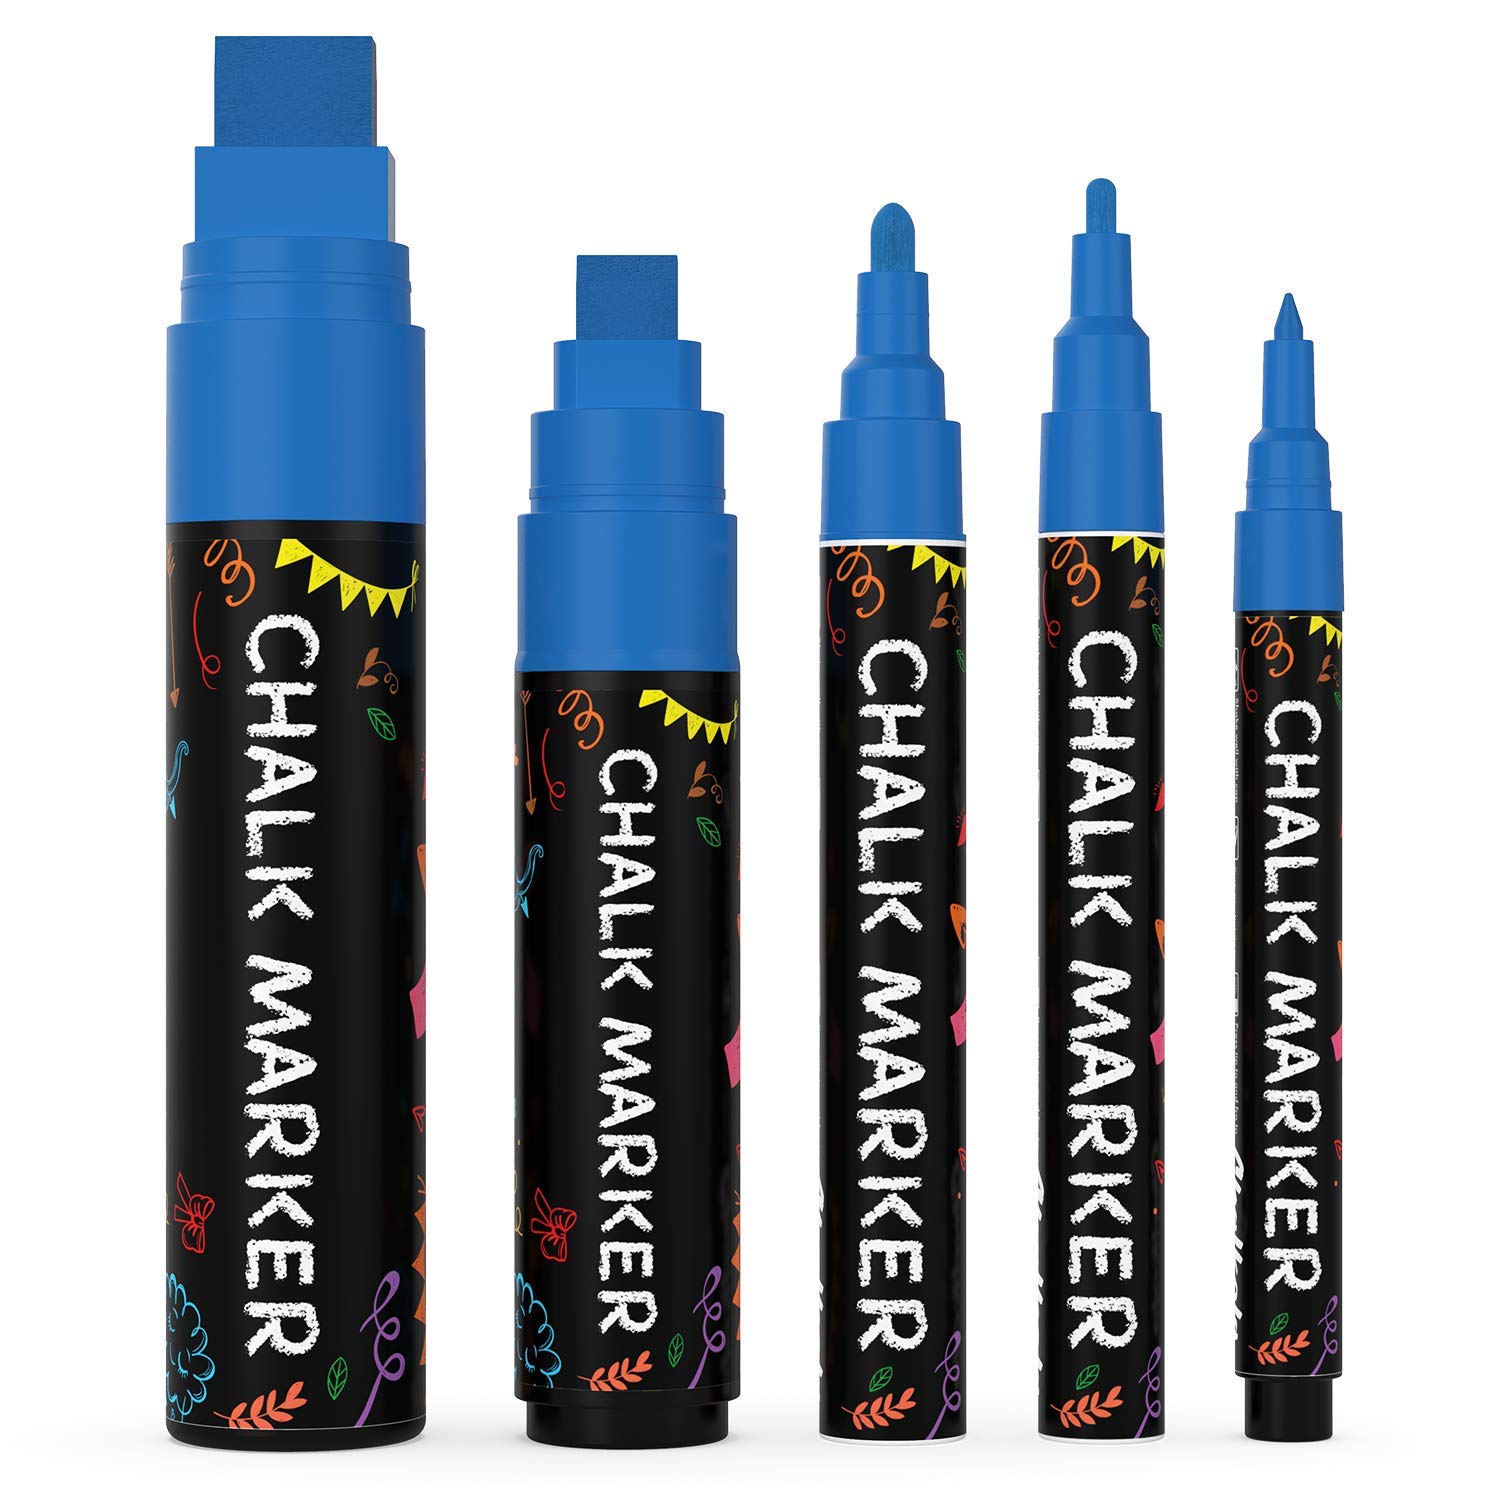 Chalkola 5 Blue Chalkboard Chalk Pens - Blue Dry Erase Markers For Blackboard, Chalkboard Signs, Windows, Glass Variety Pack - Fine Jumbo